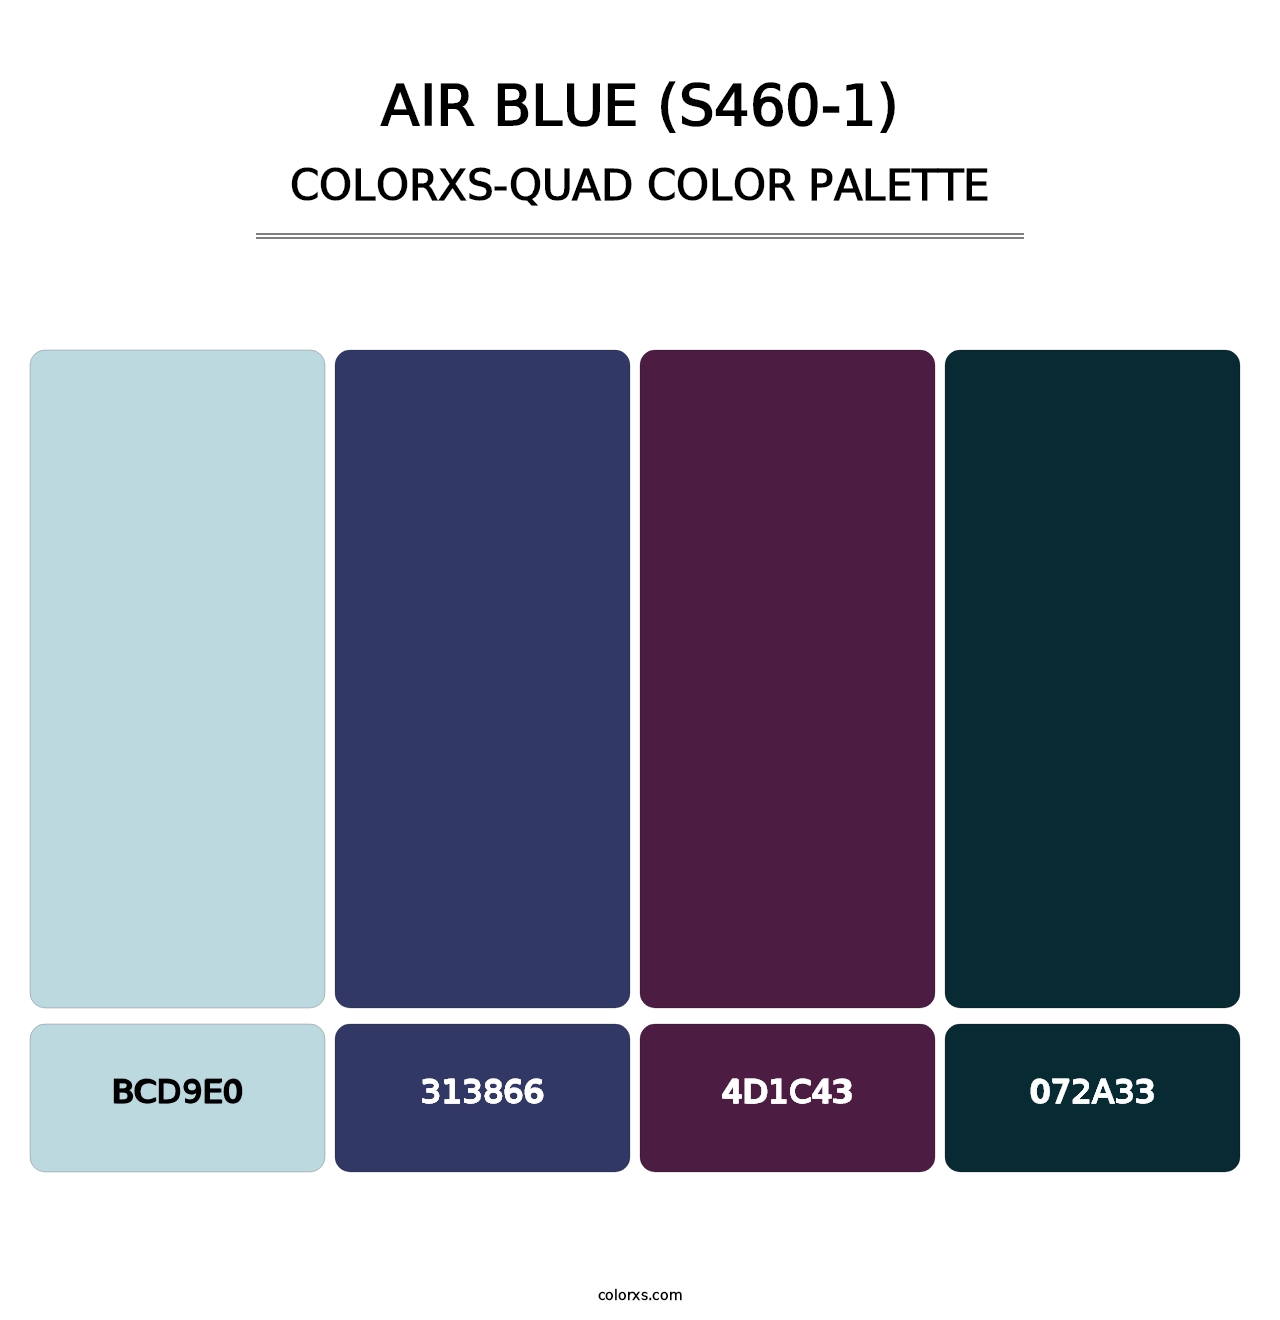 Air Blue (S460-1) - Colorxs Quad Palette